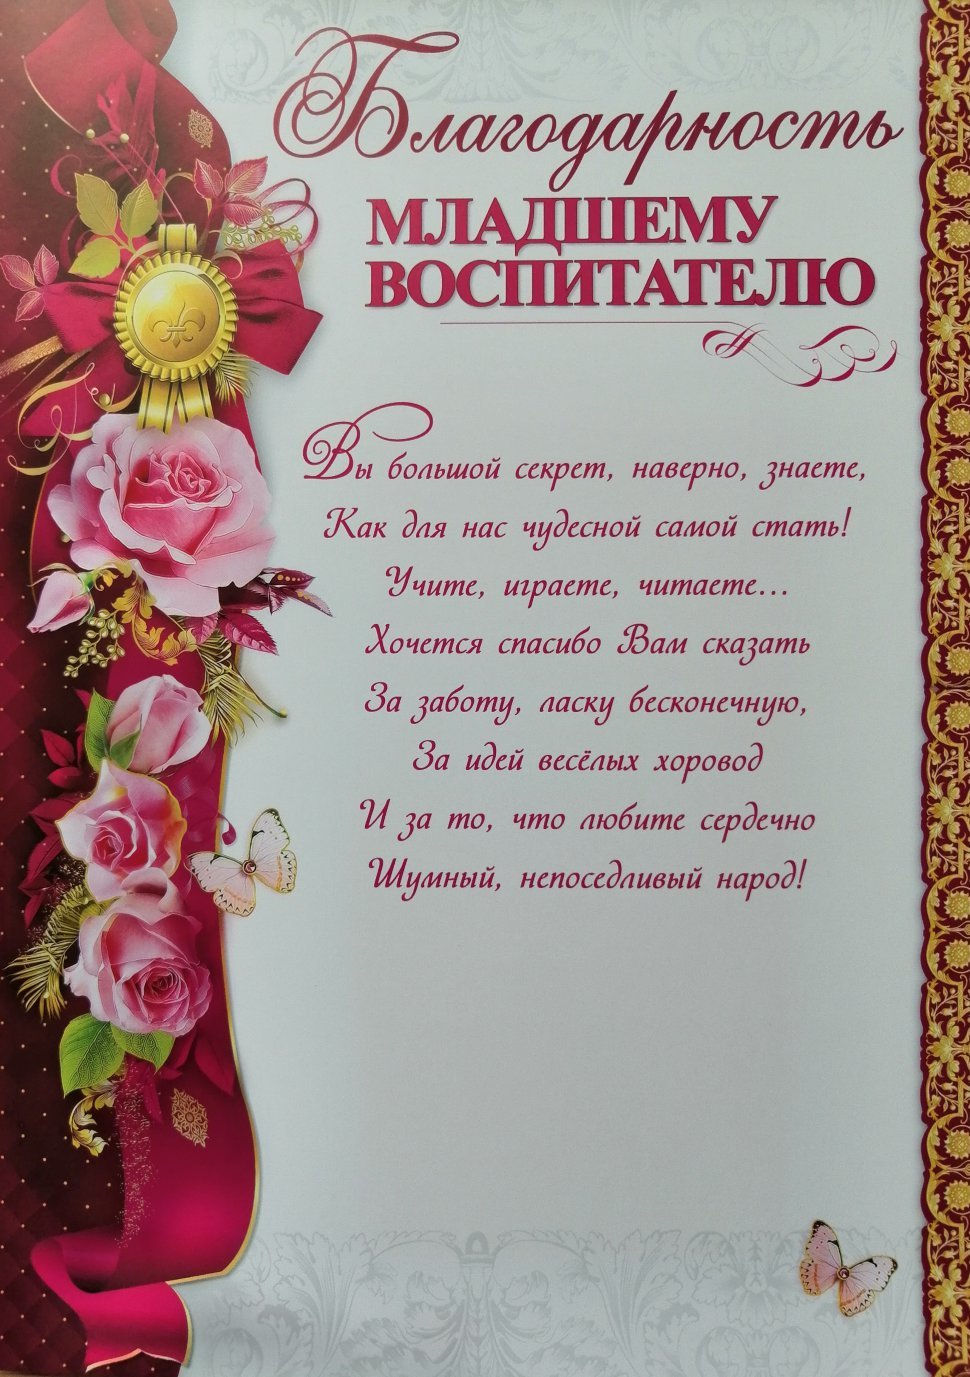 Подарок на Выпускной для Няни - сладкая открытка с шоколадом